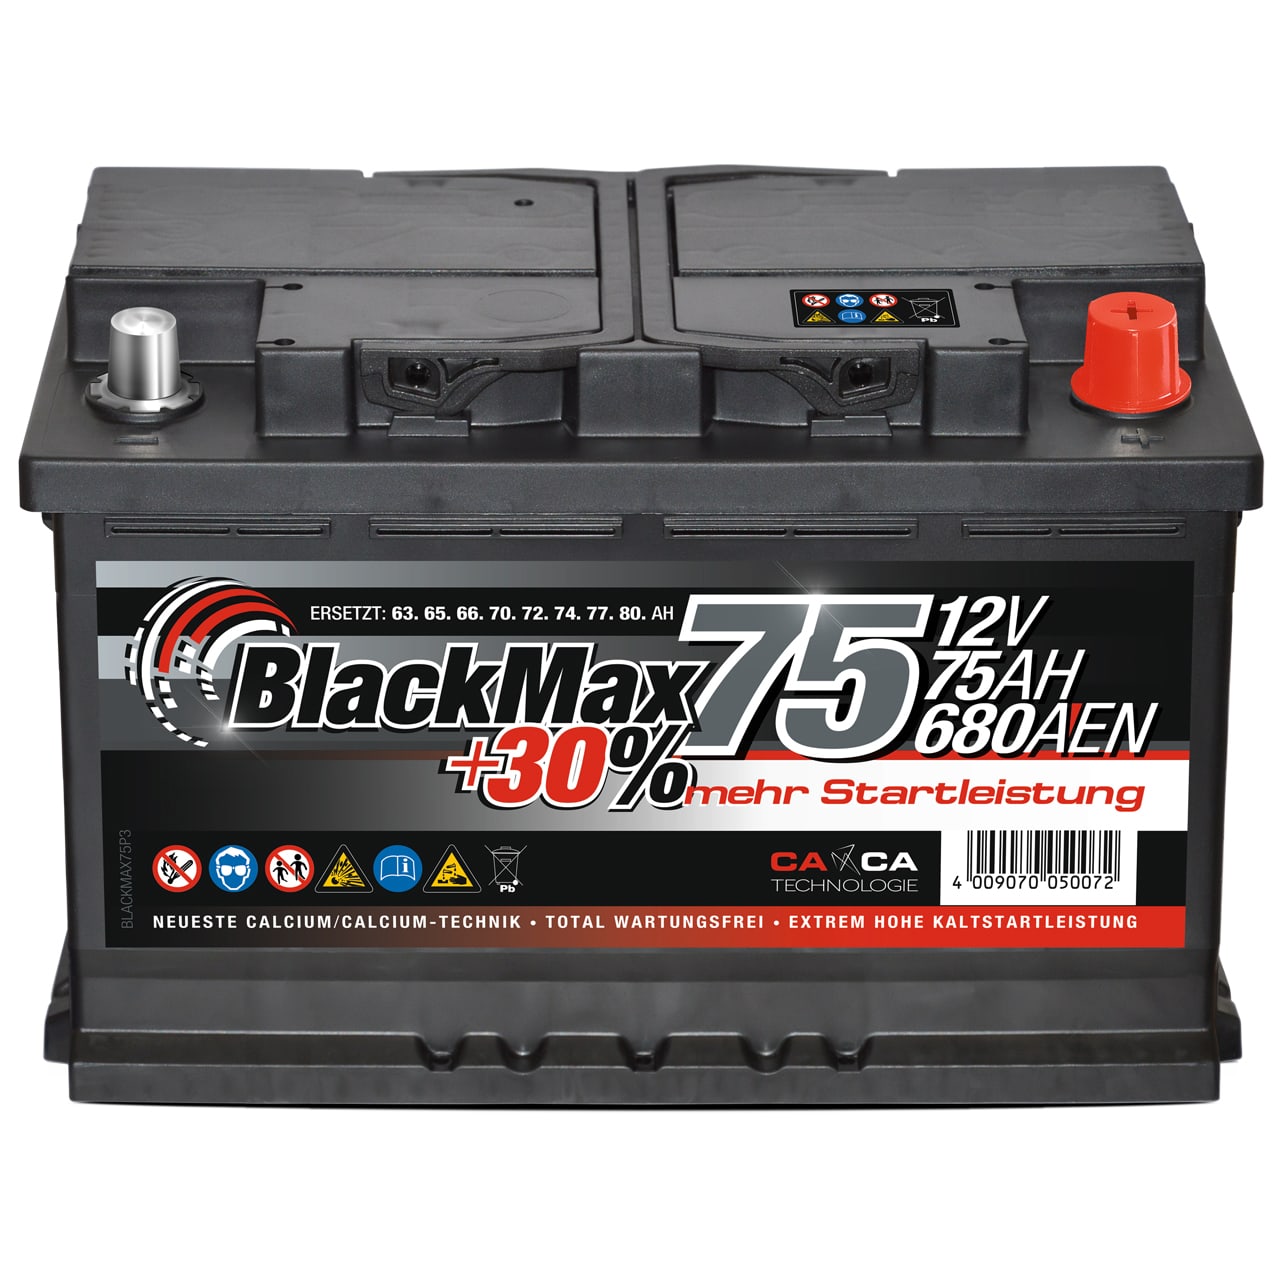 BlackMax +30 Starterbatterie 12V 75Ah 680A/EN für PKW